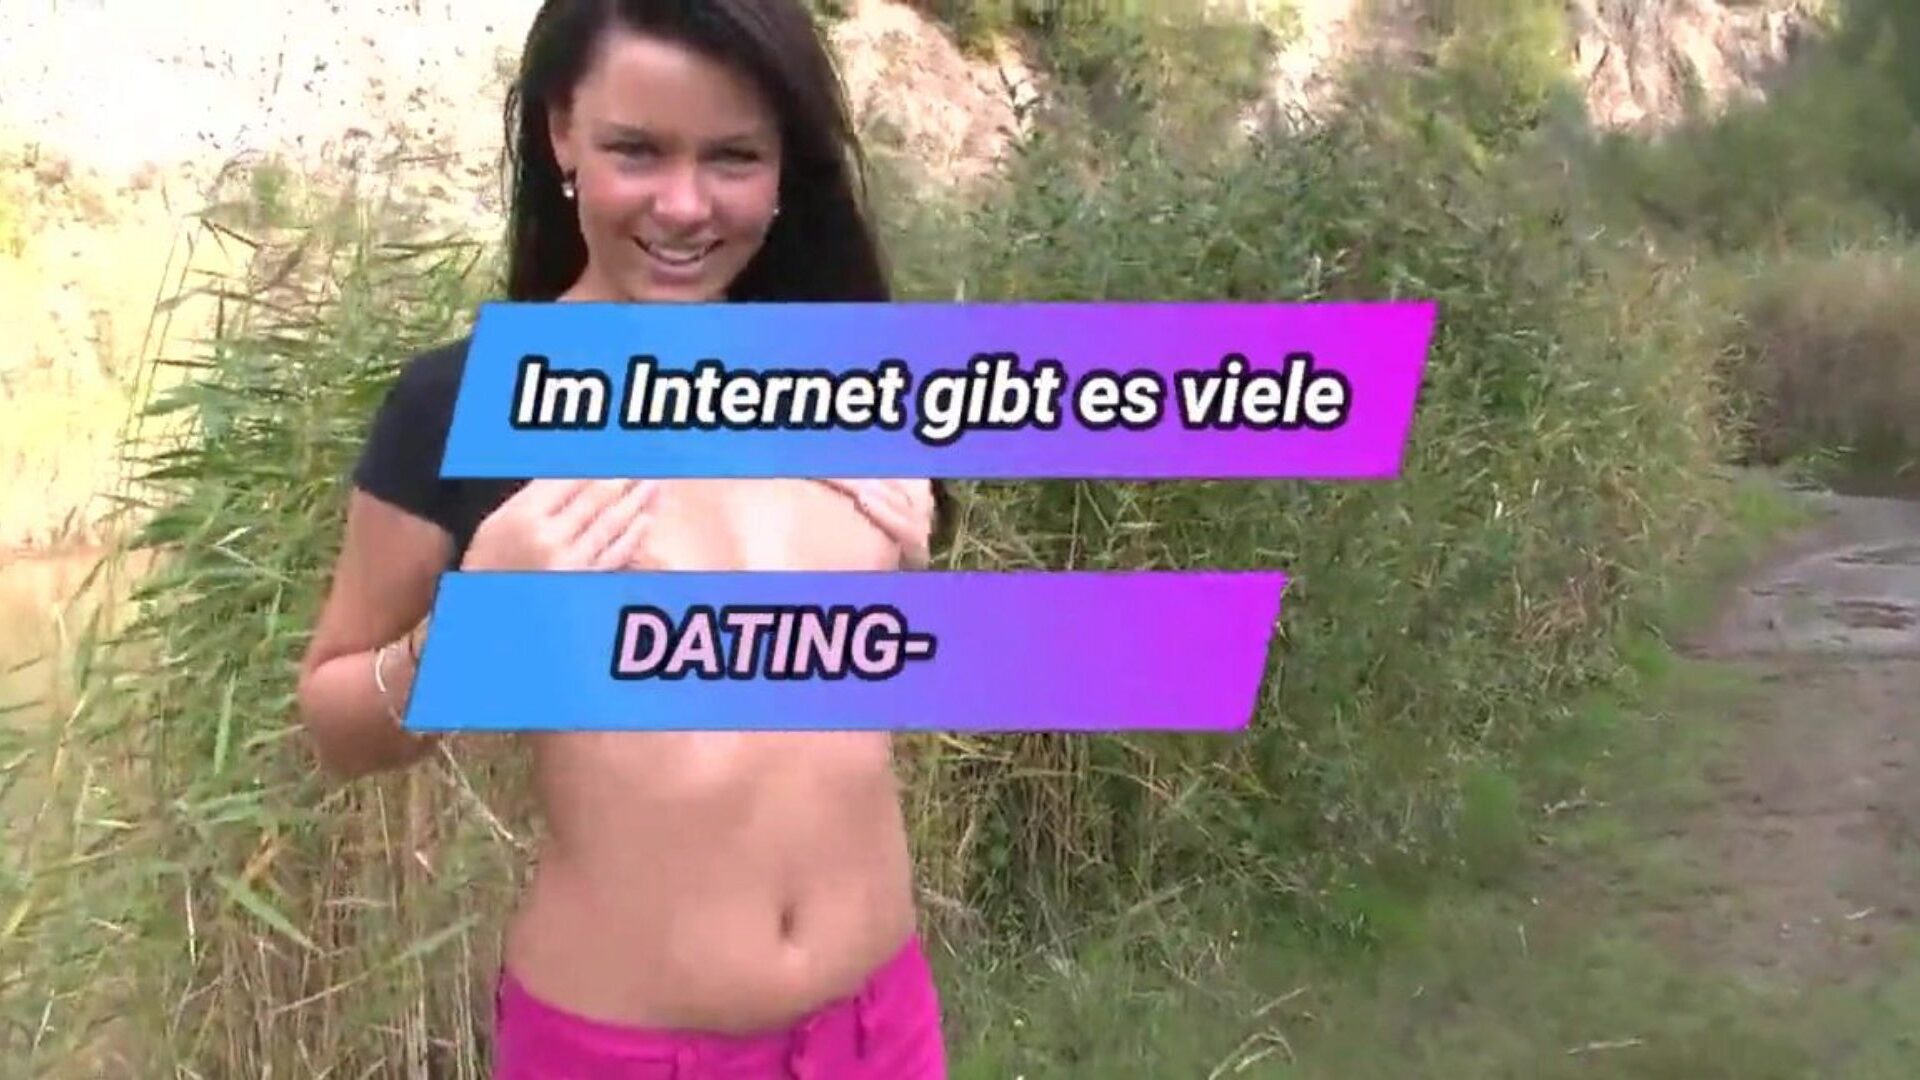 adolescente alemán sexo rectal al aire libre - cerca del lago edad legal alemana adolescente sexo anal al aire libre - cerca del lago